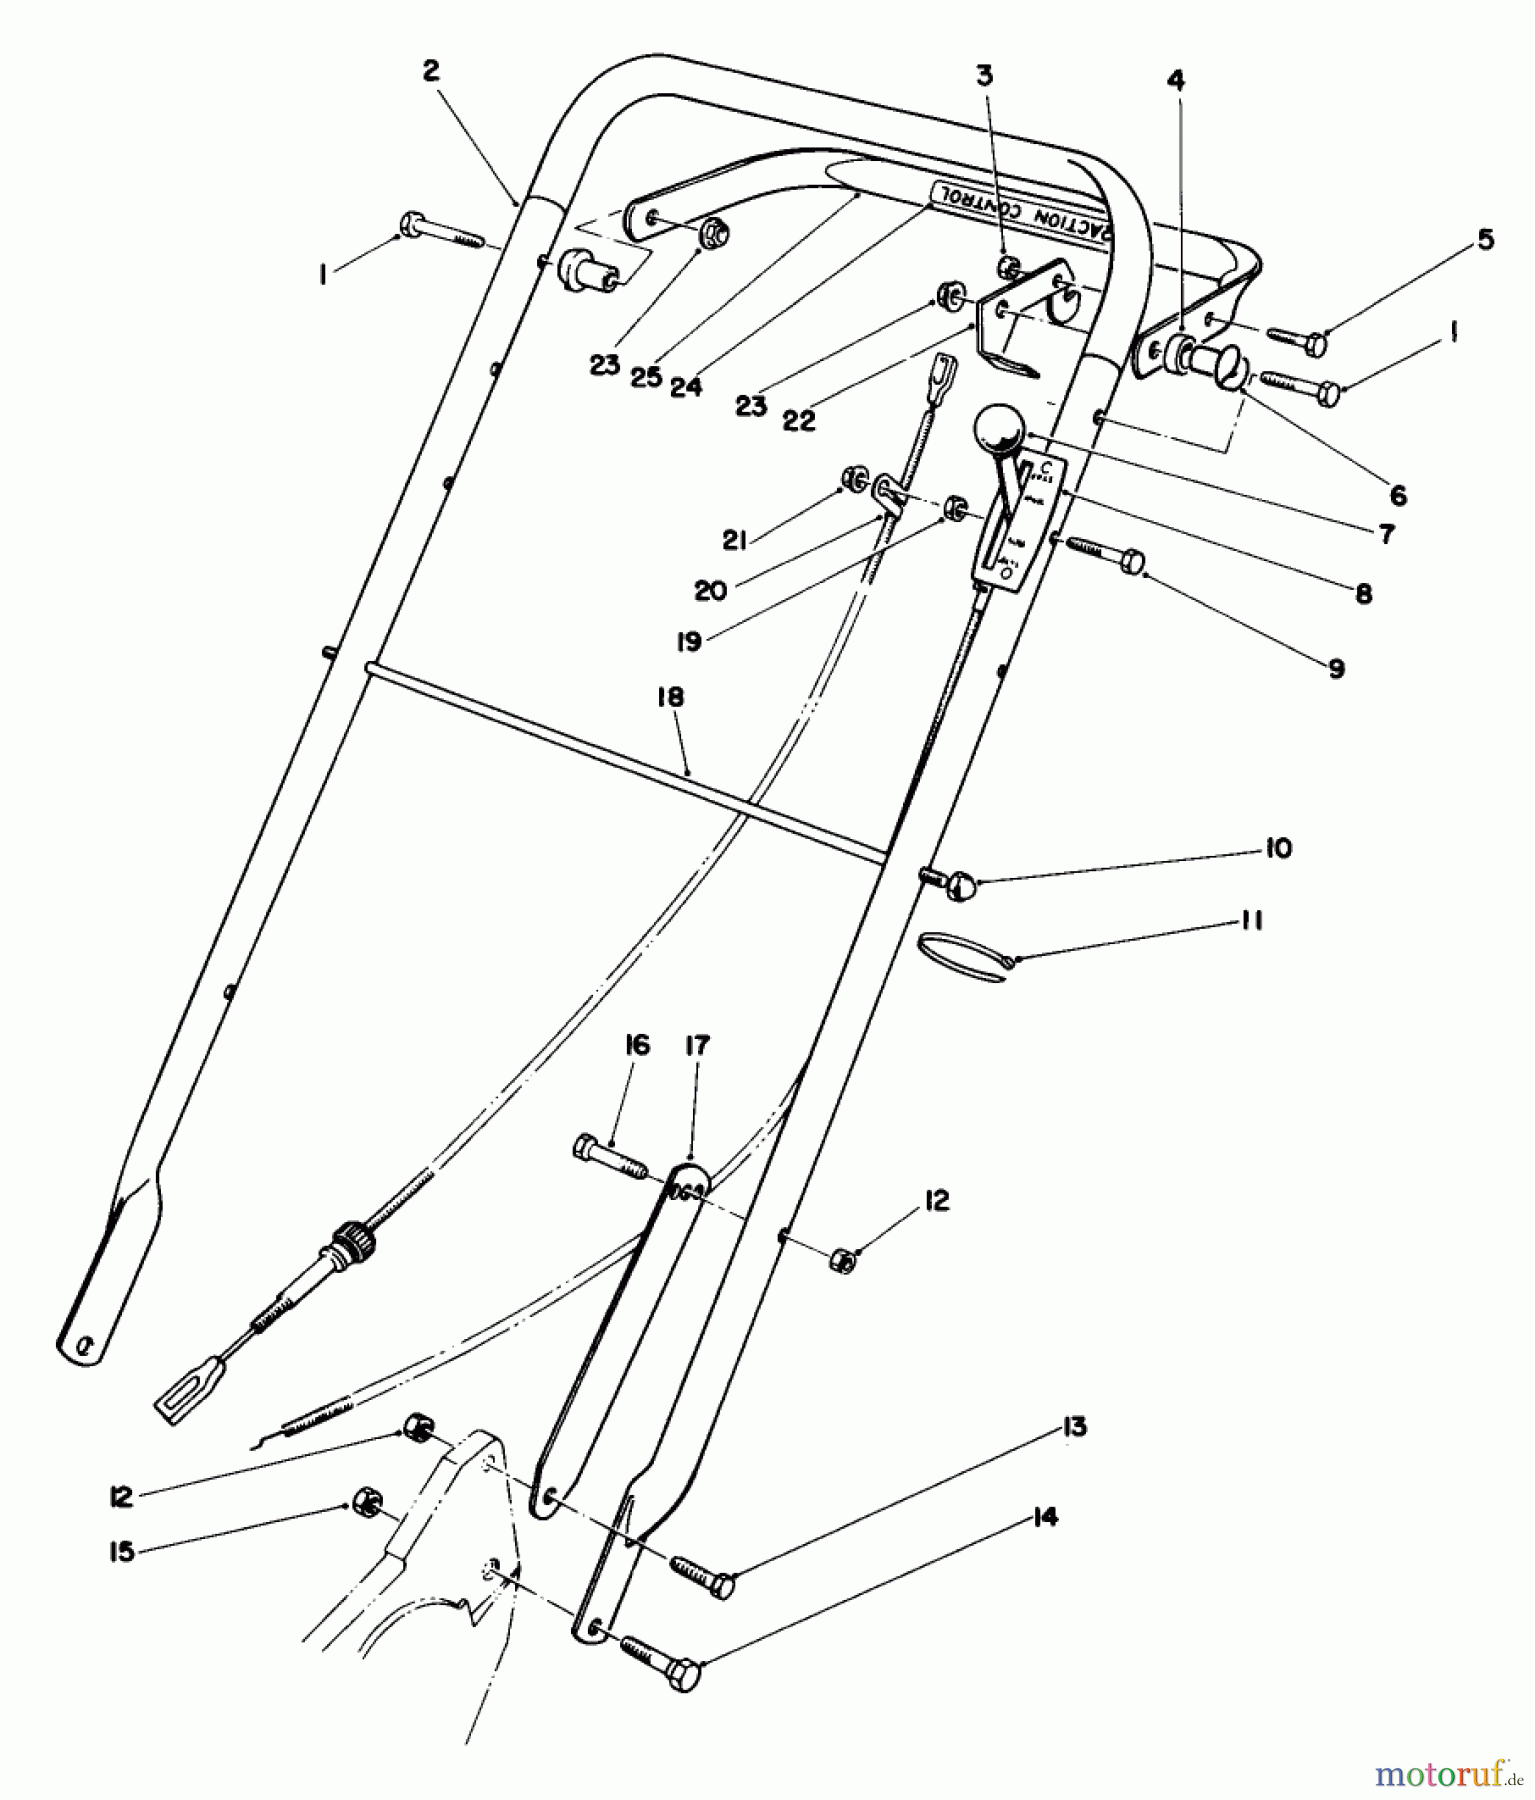  Toro Neu Mowers, Walk-Behind Seite 2 22030 - Toro Lawnmower, 1987 (7000001-7999999) HANDLE ASSEMBLY (MODEL 22035)